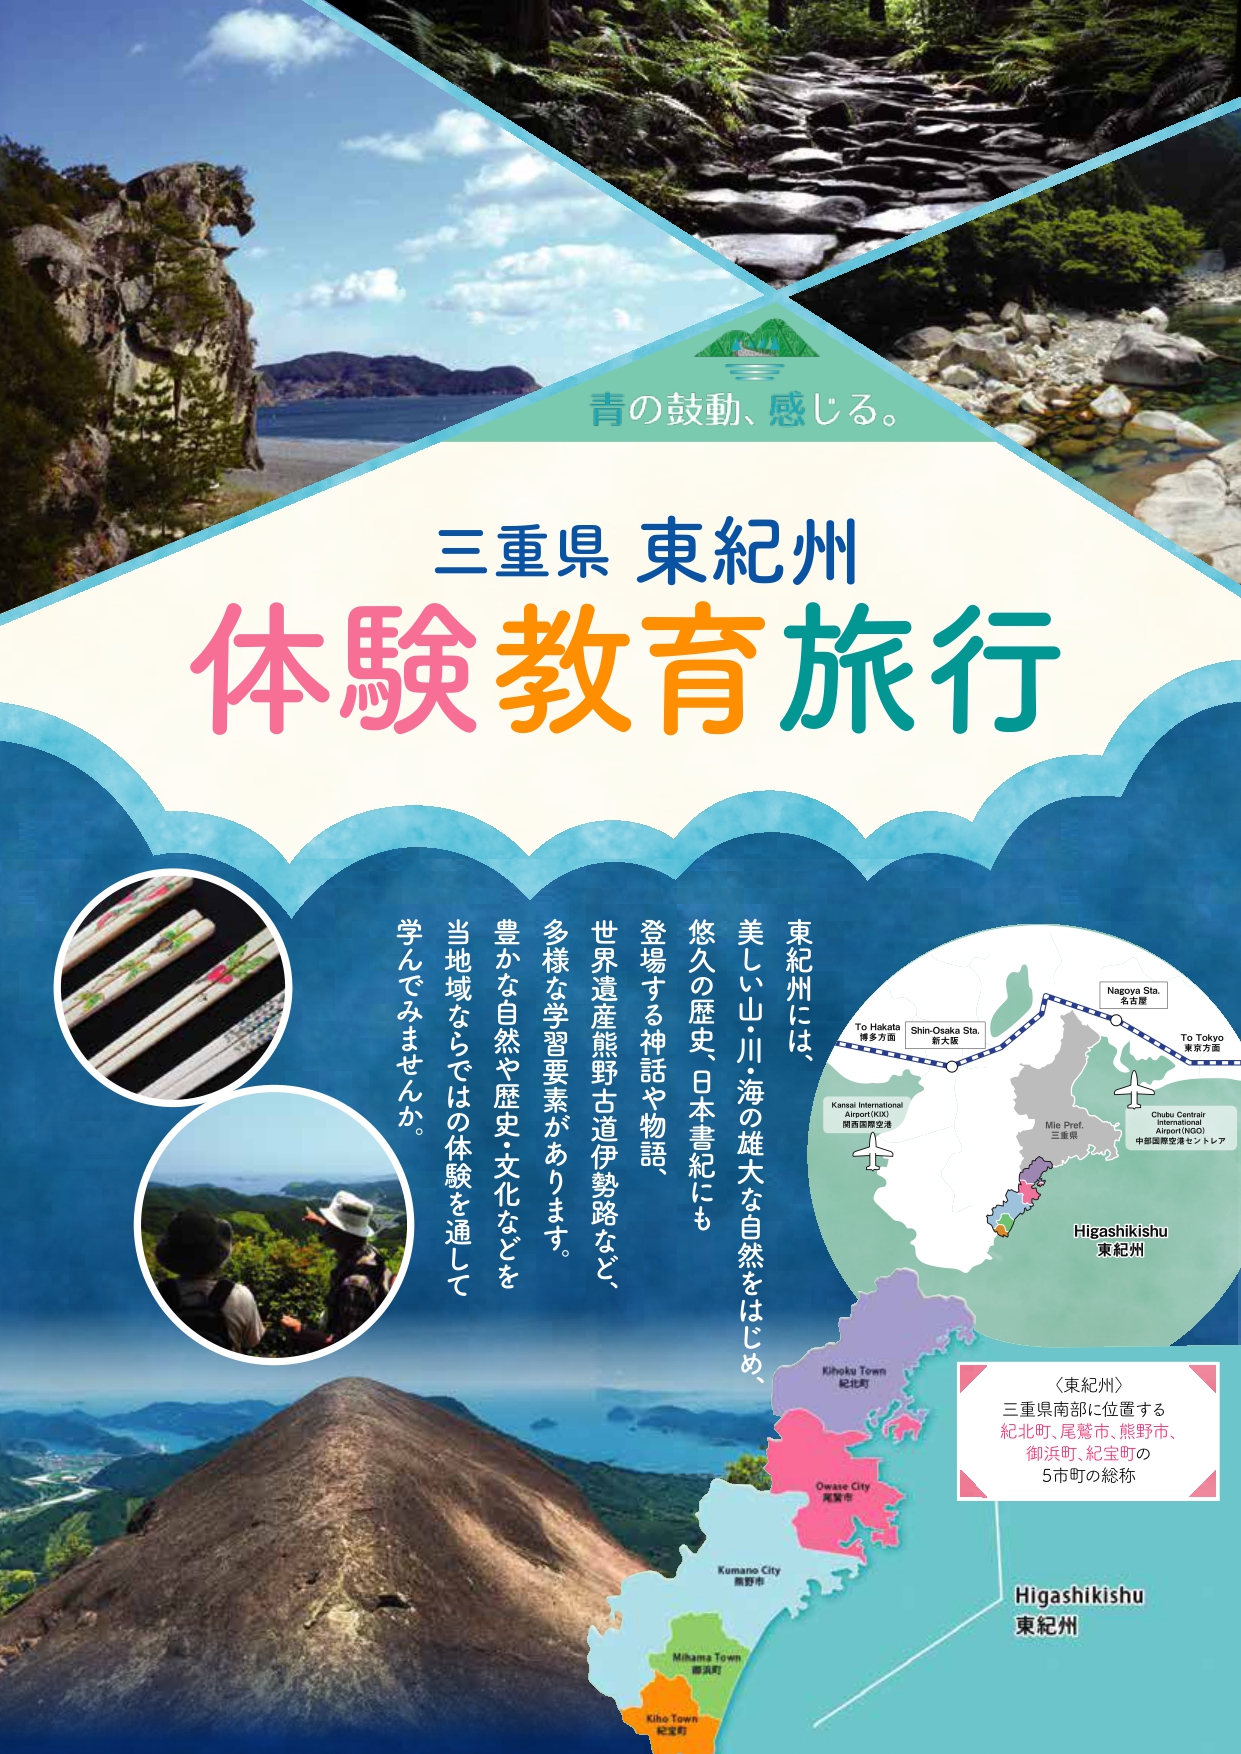 三重県 東紀州 体験教育旅行パンフレット